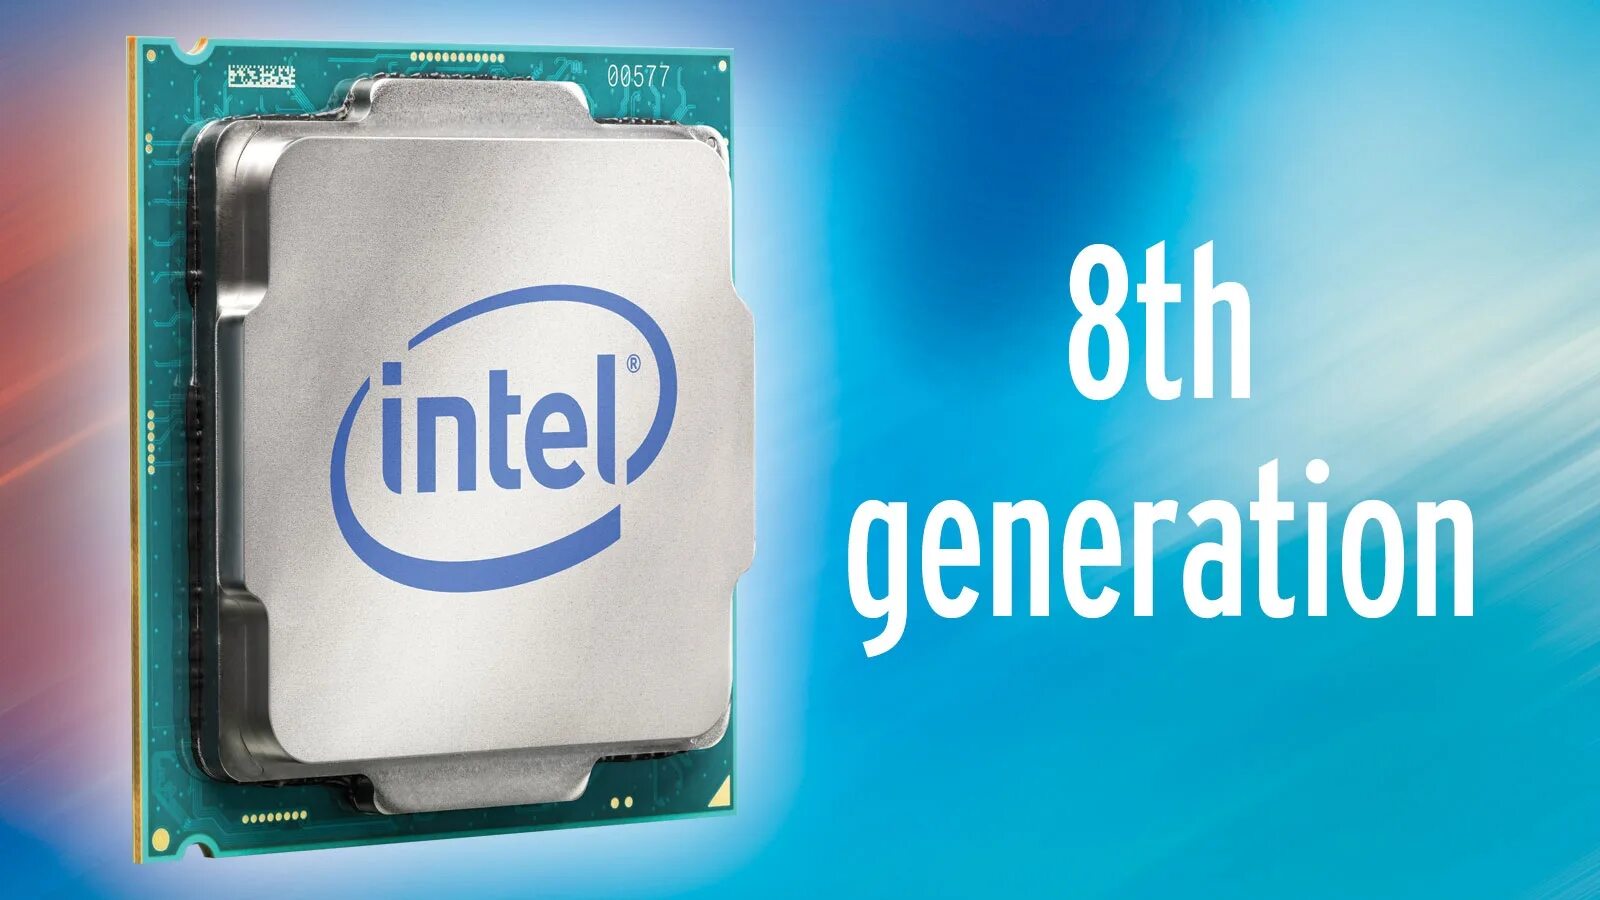 Процессор Intel Core i7 Coffee Lake. Intel Core 8th Gen. Процессор Intel Core i7 Coffee Lake чипсет. Процессор Intel Core i7-8700k.